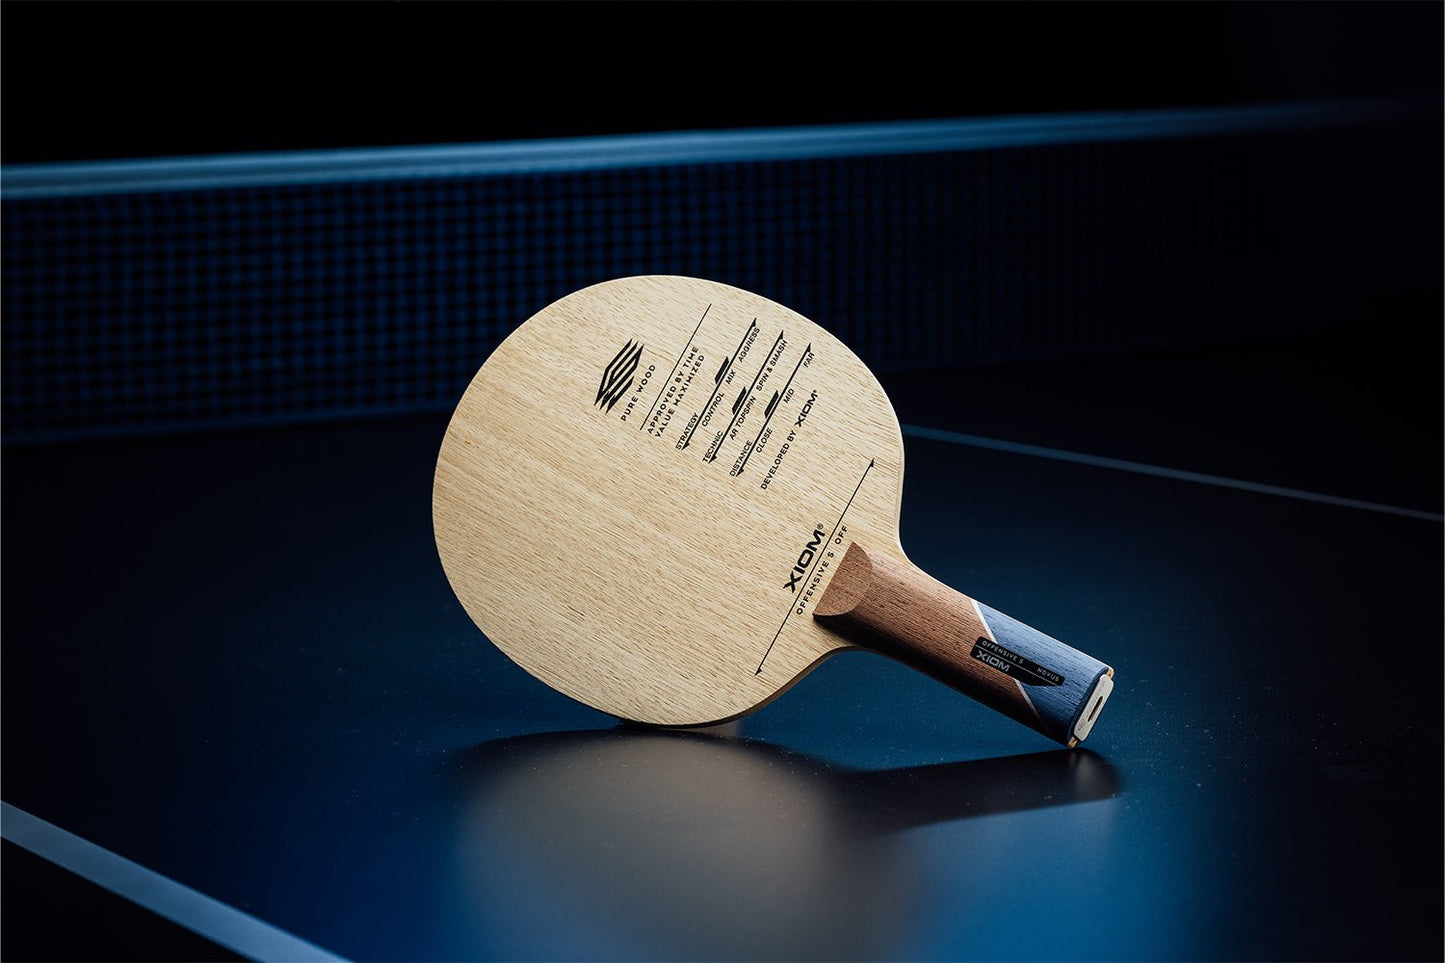 Stehender Xiom Offensive Off Tischtennisschläger mit geradem Griff, Janova Sensor, USB-C-Buchse auf Tischtennistisch